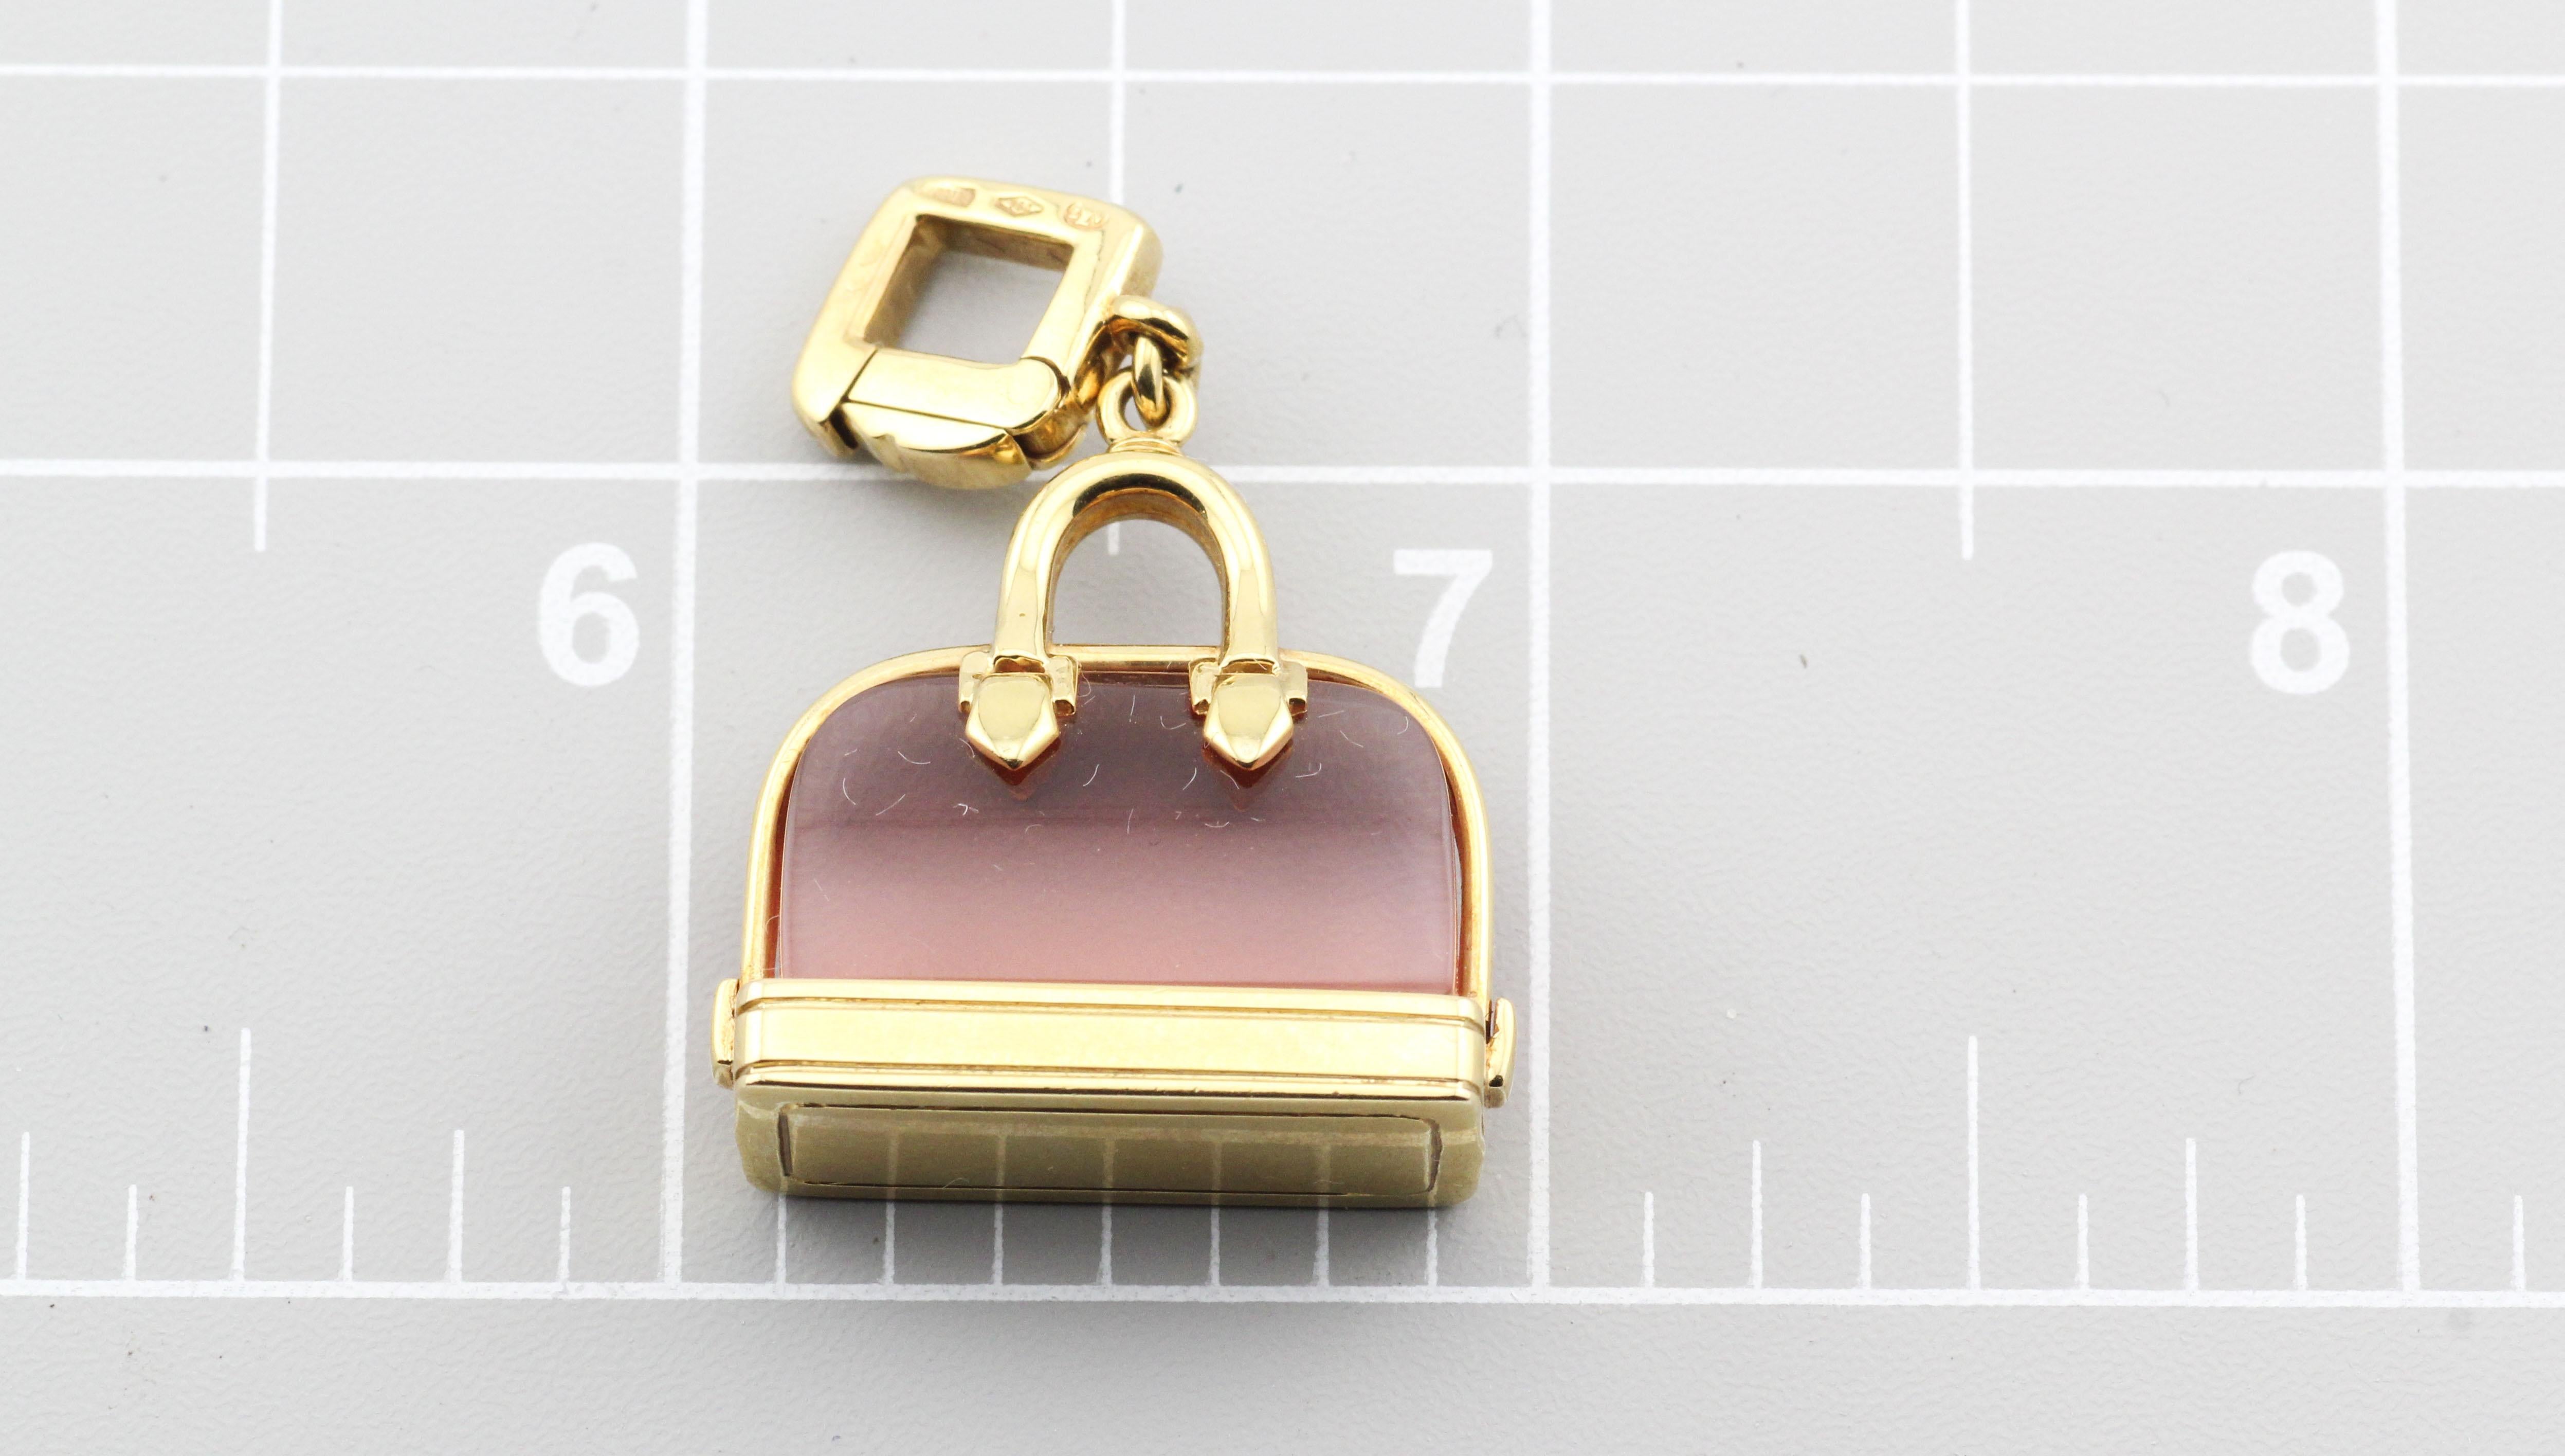 Square Cut Louis Vuitton Pink Tourmaline 18k Yellow Gold Alma Bag Charm Pendant